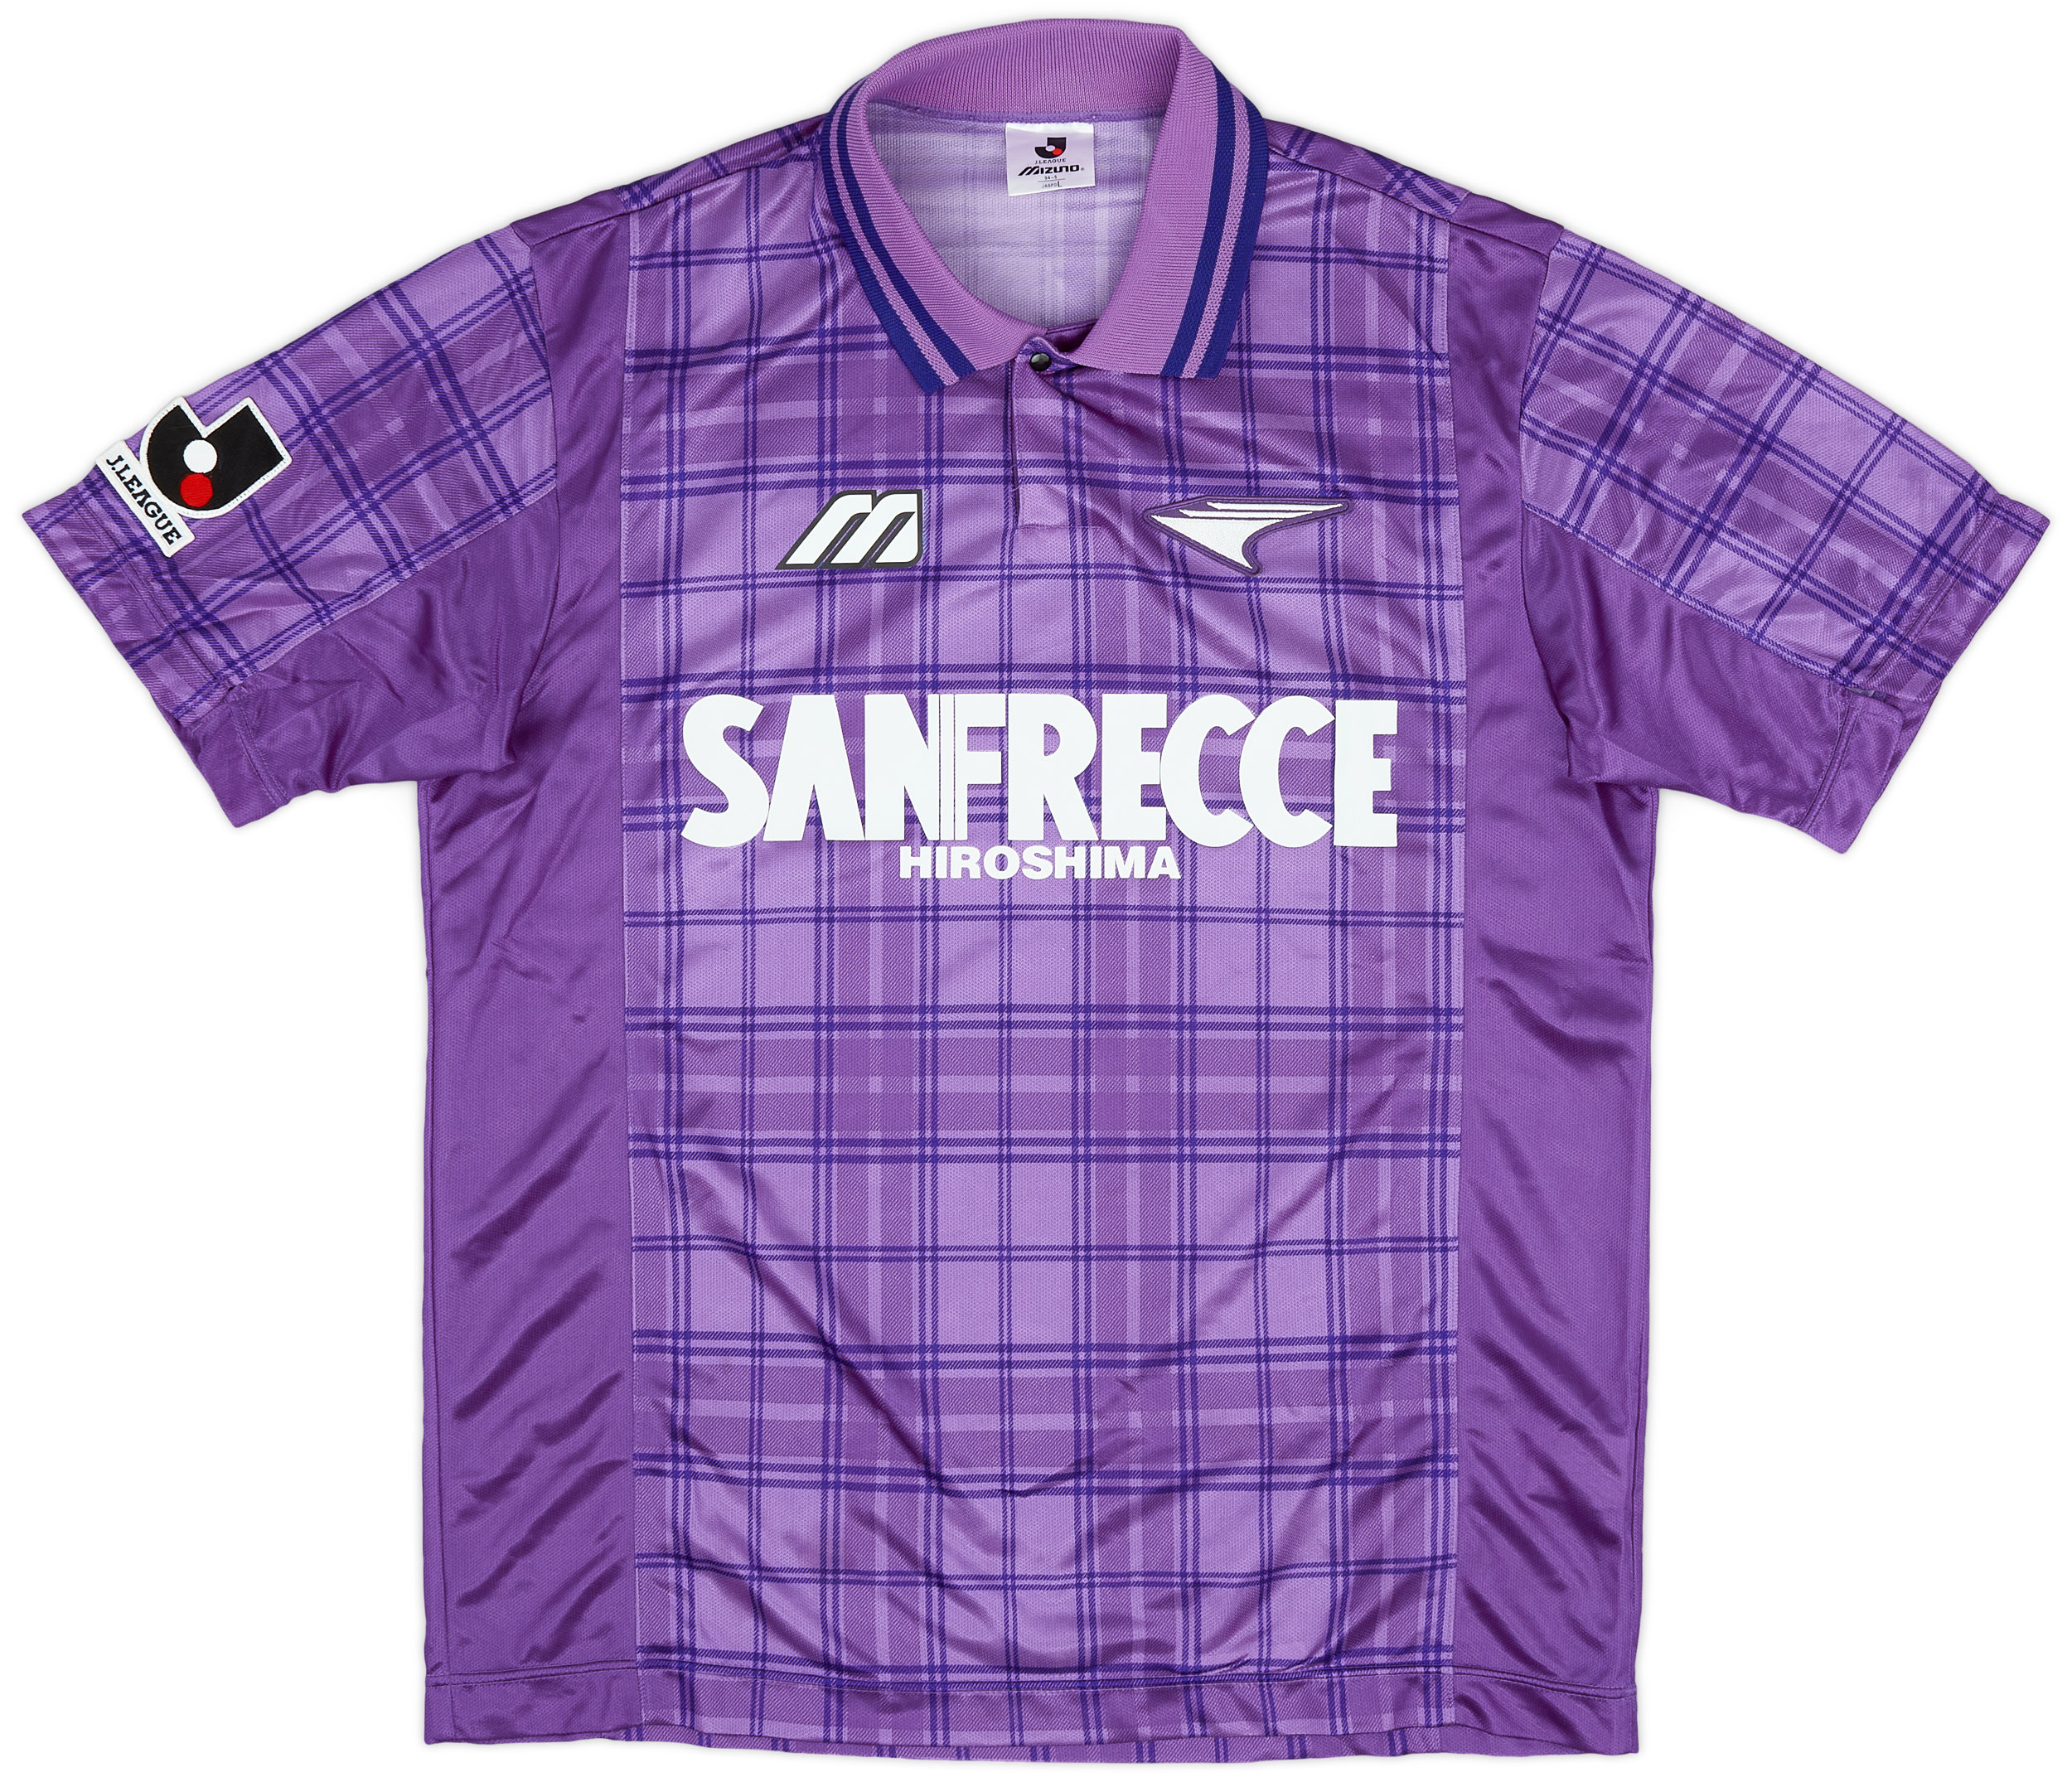 1996 Sanfrecce Hiroshima Home Shirt - 9/10 - ()